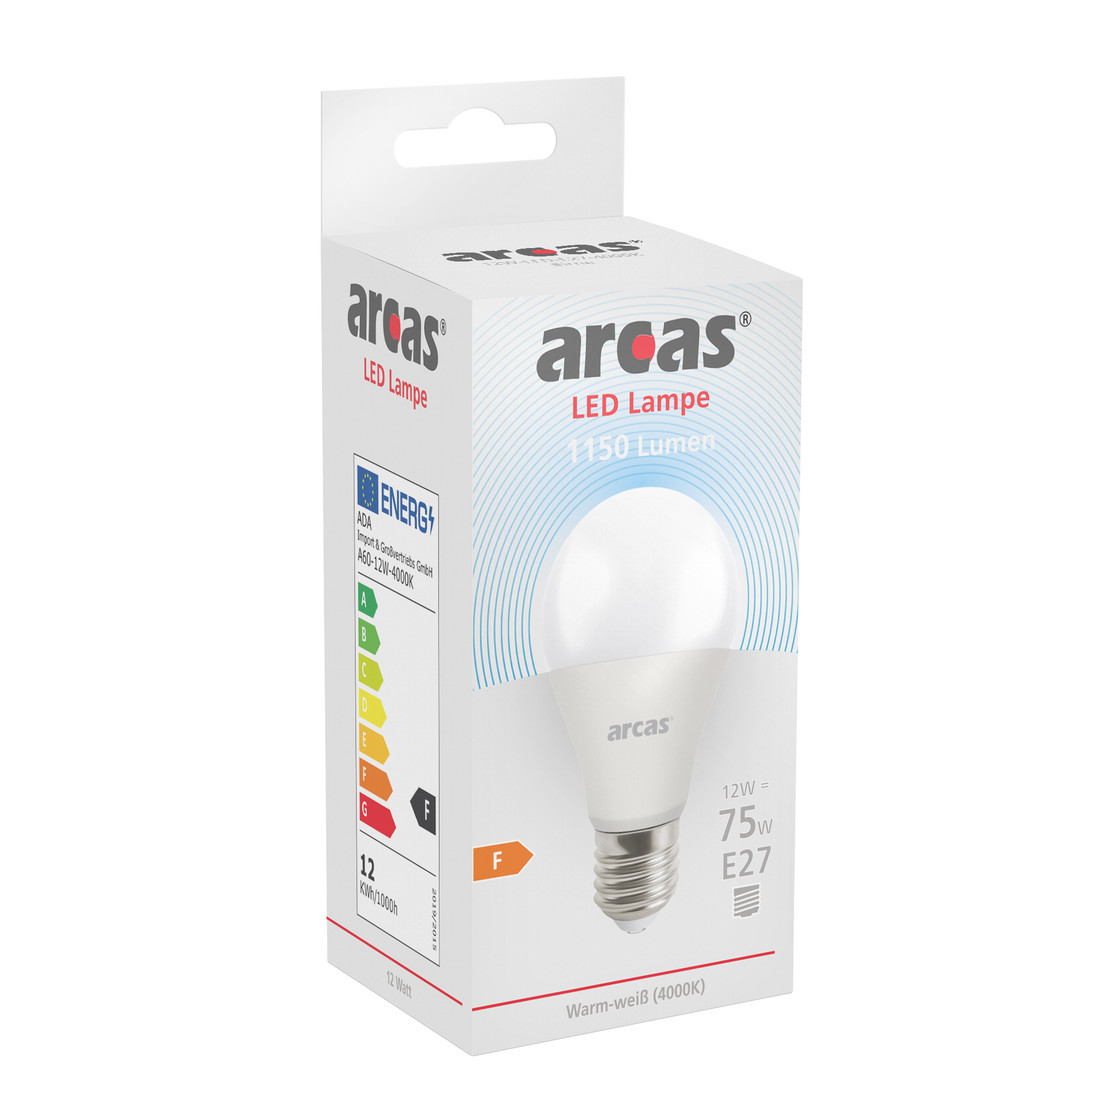 ARCAS LED Lampe / 12W / E27 80W Birne entspricht 11 A60 / Glühlampe 